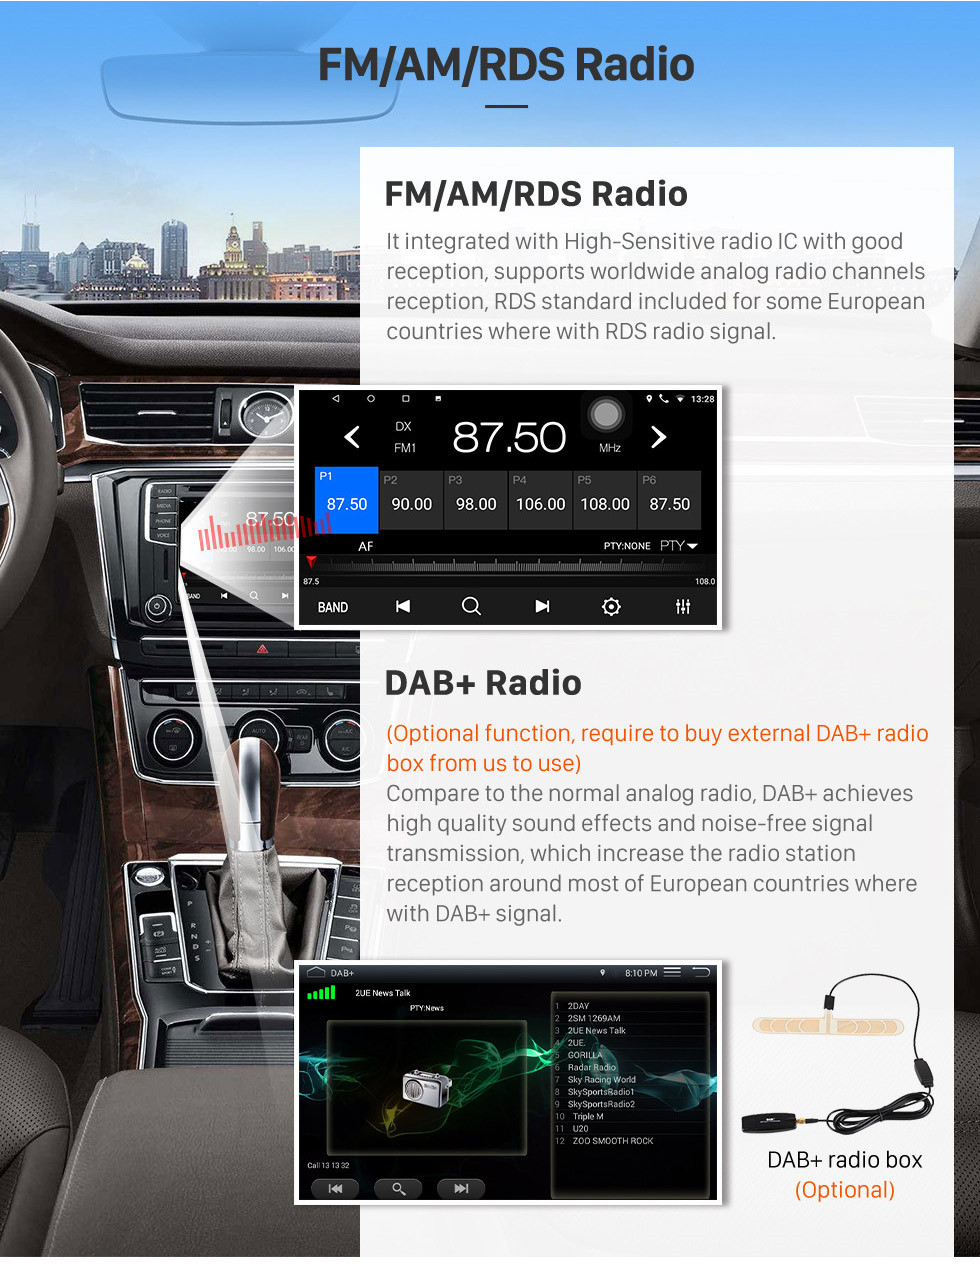 Seicane Android 10.0 9 polegada Touchscreen GPS de Navegação GPS para 2015 Mahindra Scorpio Manual A / C com suporte USB Bluetooth WIFI Carplay SWC câmera Traseira